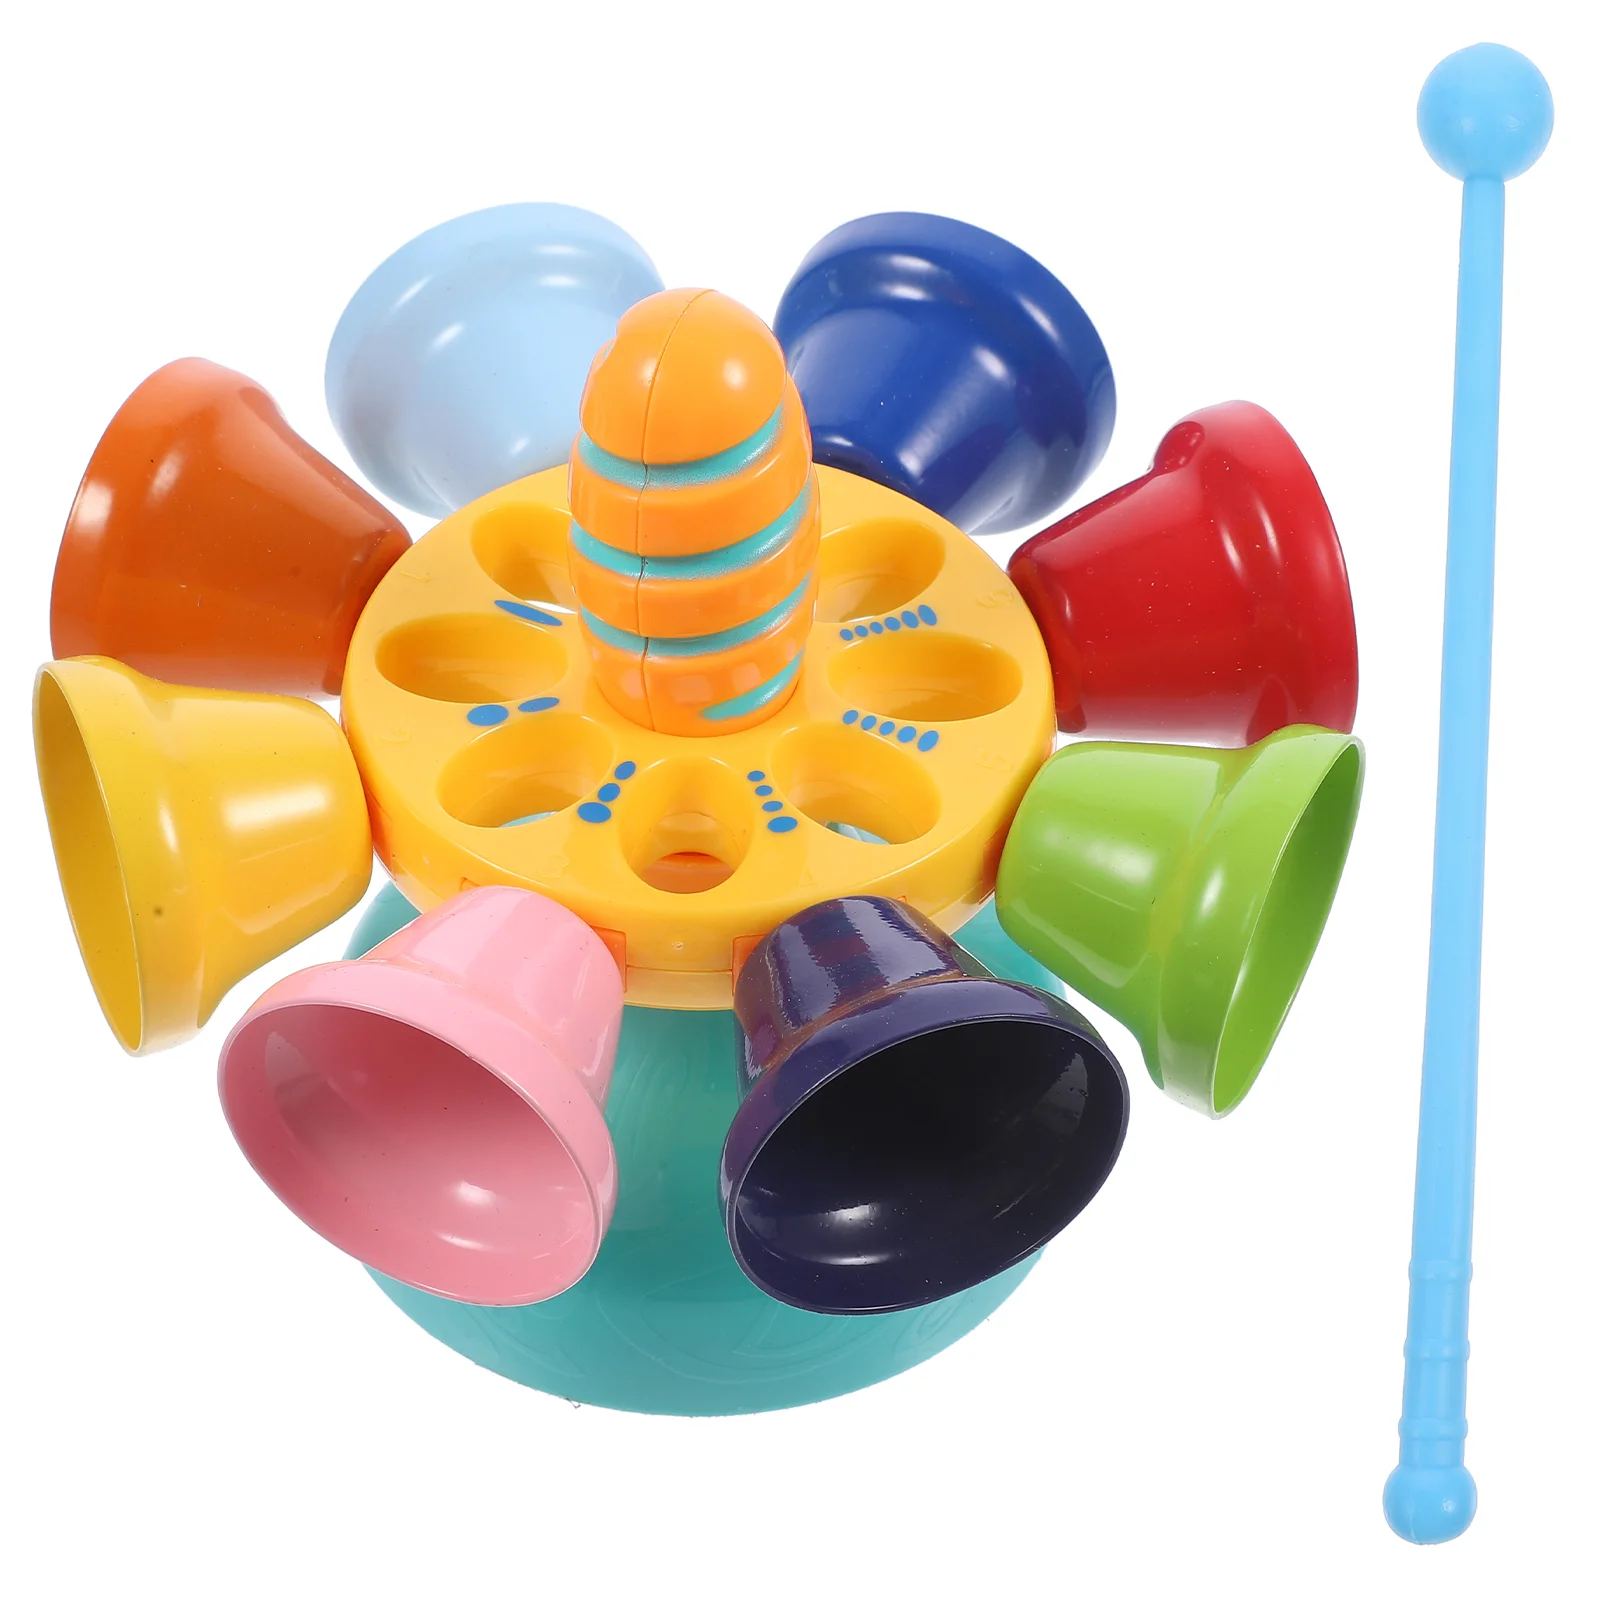 

Вращающиеся детские развивающие игрушки, детские музыкальные перкуссионные пластиковые ритмы для детей